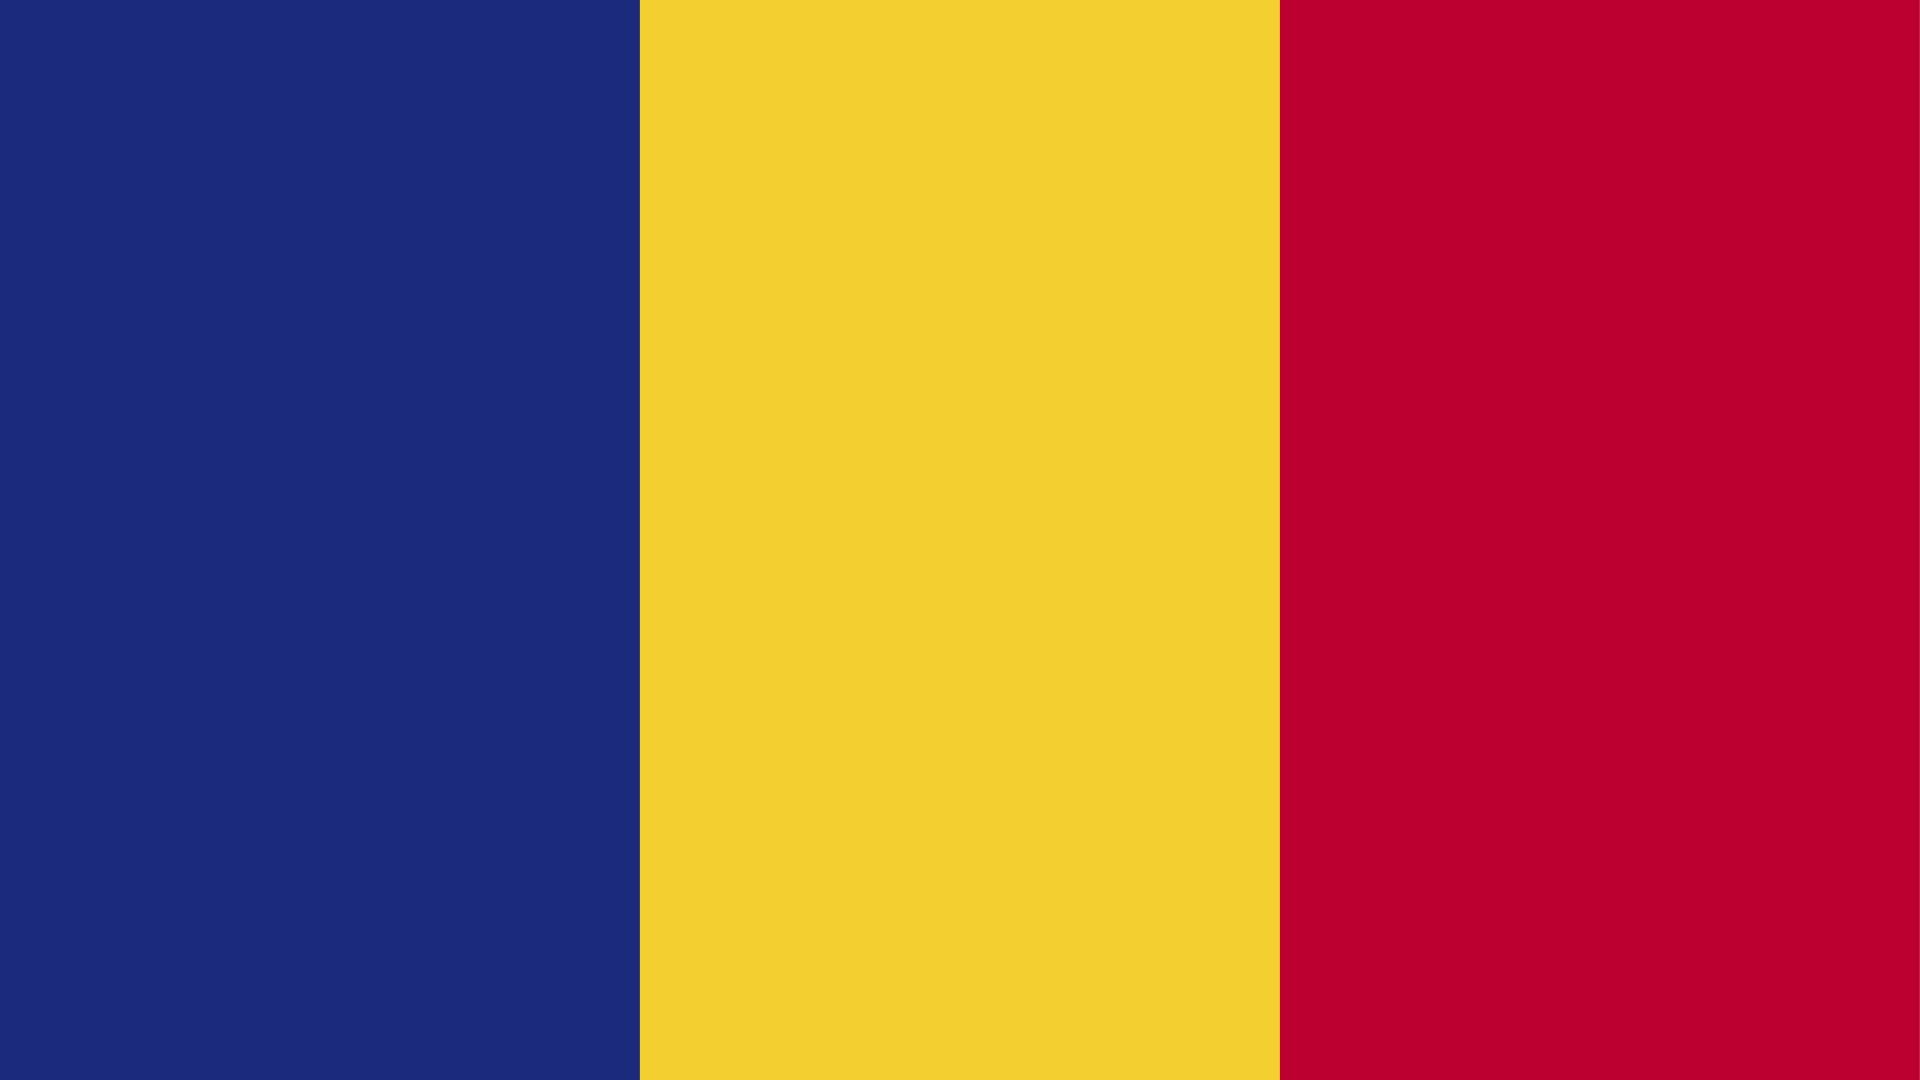 A bandeira da Romênia é composta por três listras verticais iguais, nas cores azul, amarelo e vermelho.